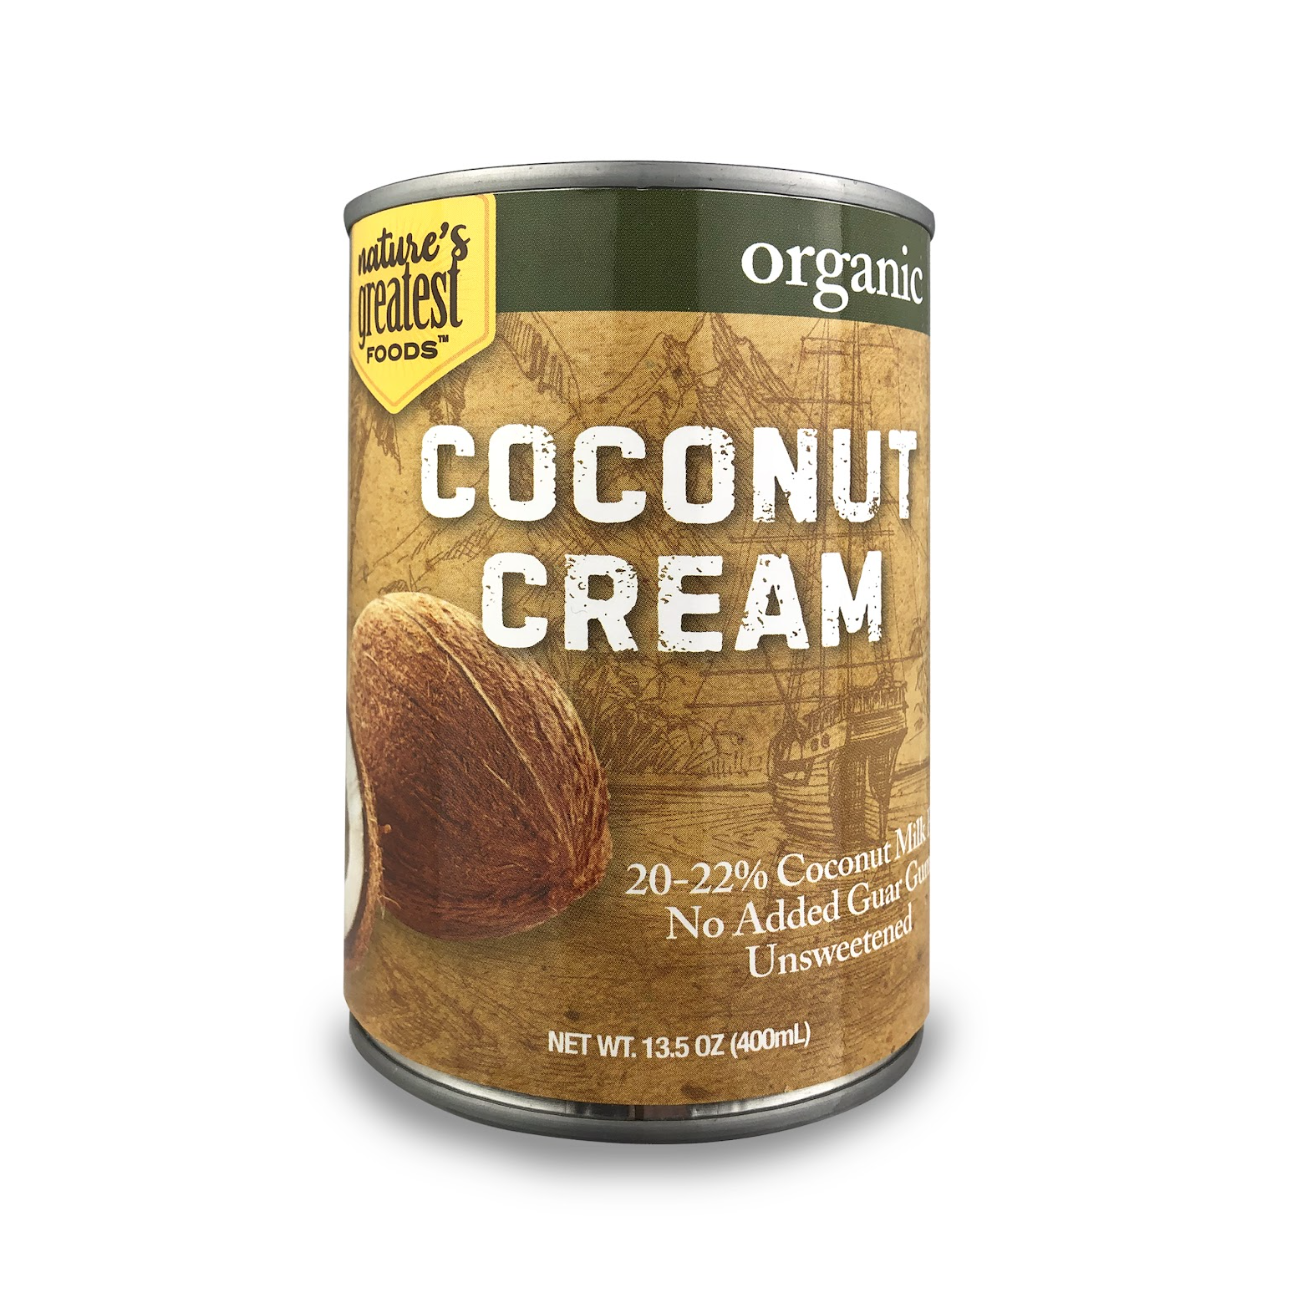 Nature's Greatest Foods Organic Coconut Cream 12 units per case 13.5 oz